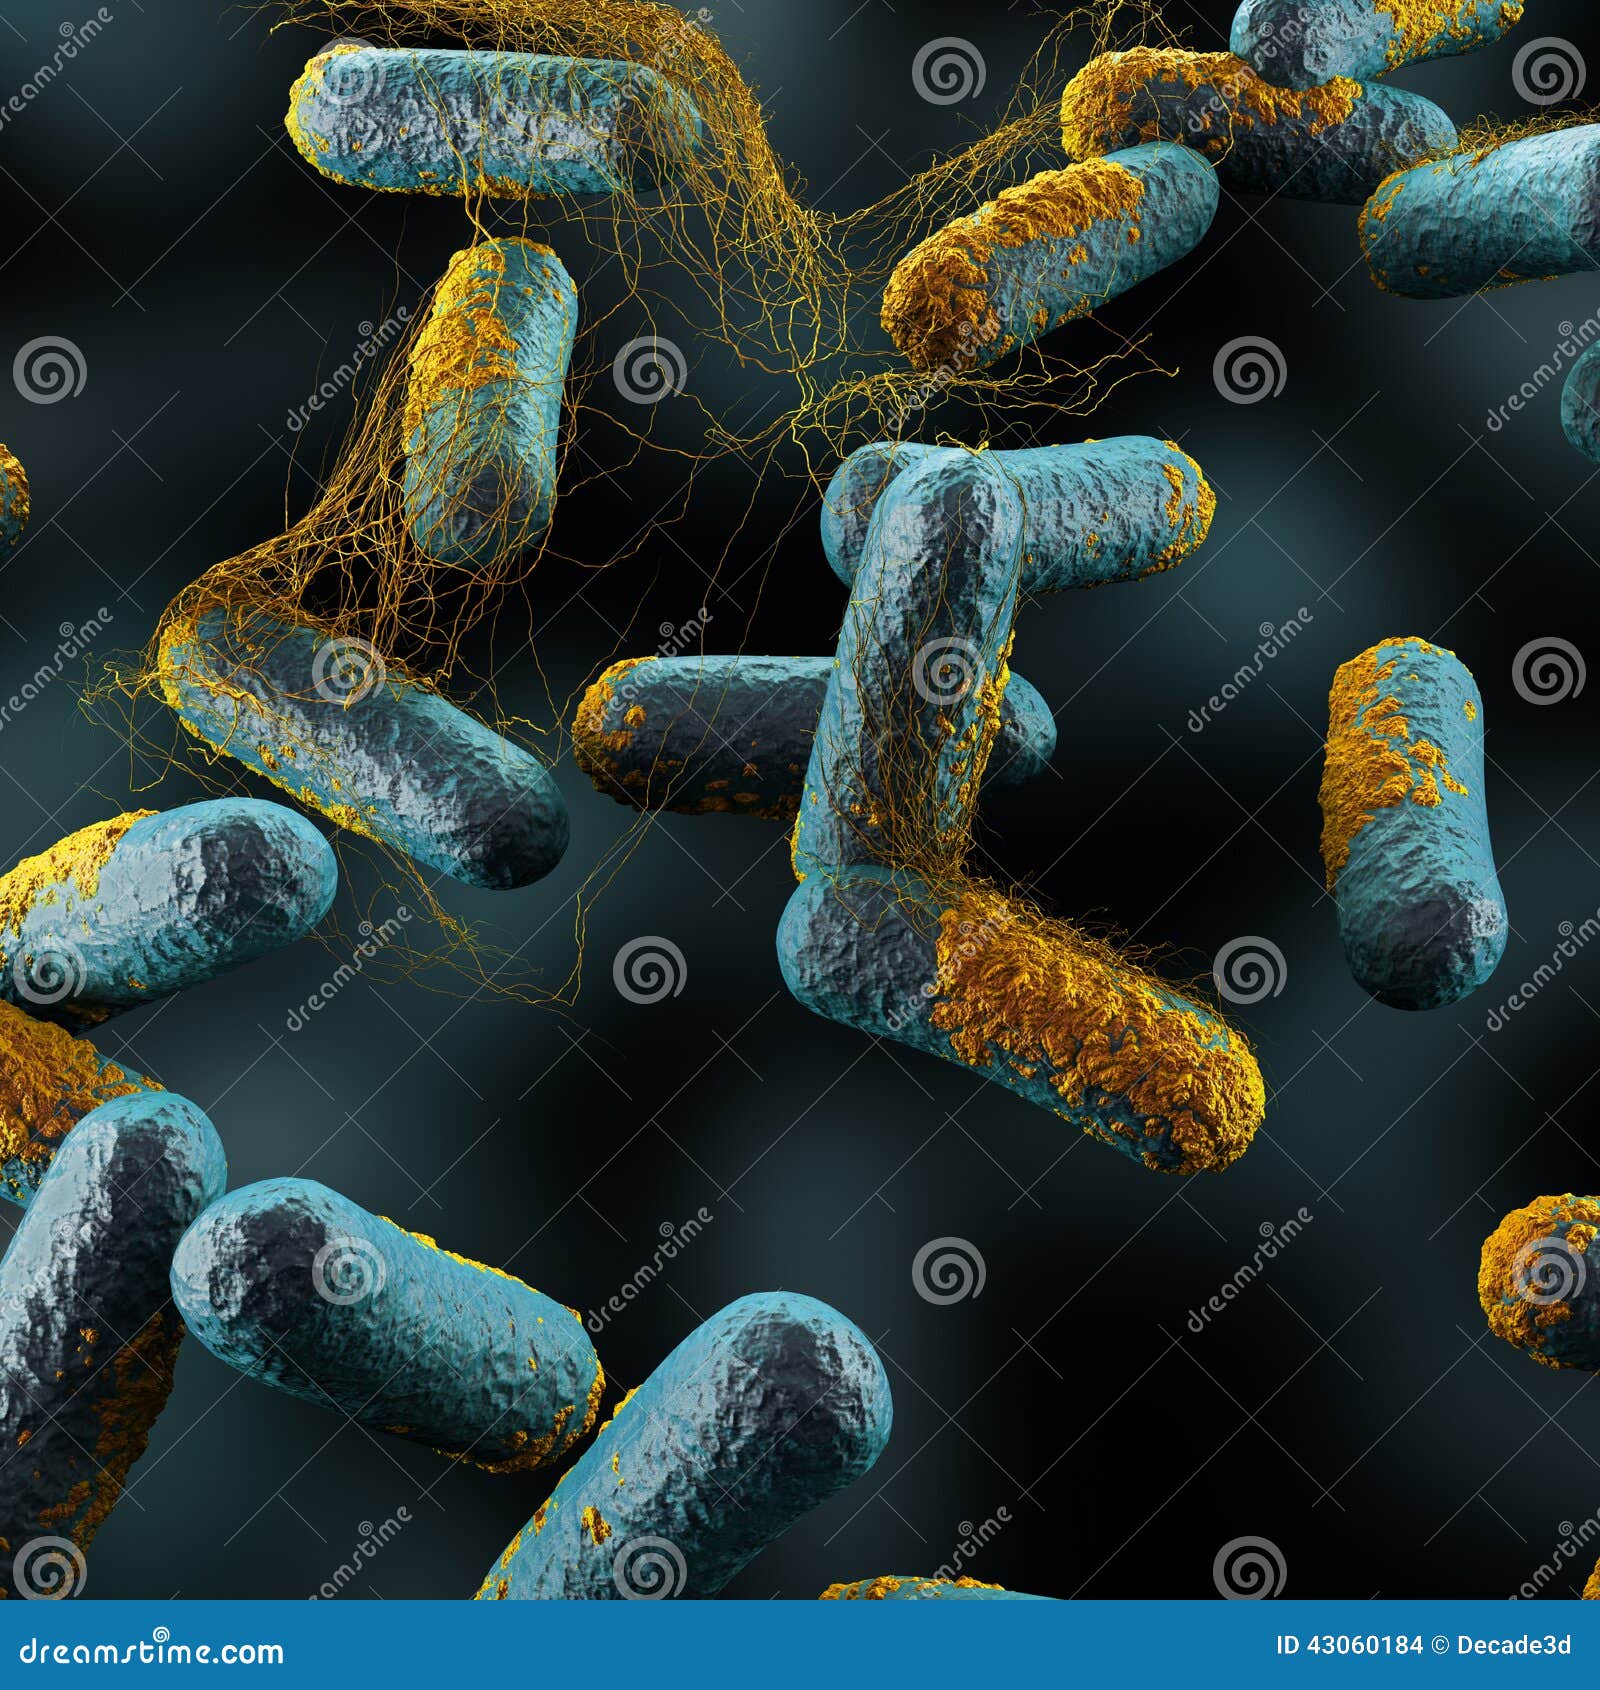 clostridium perfringens bacteria